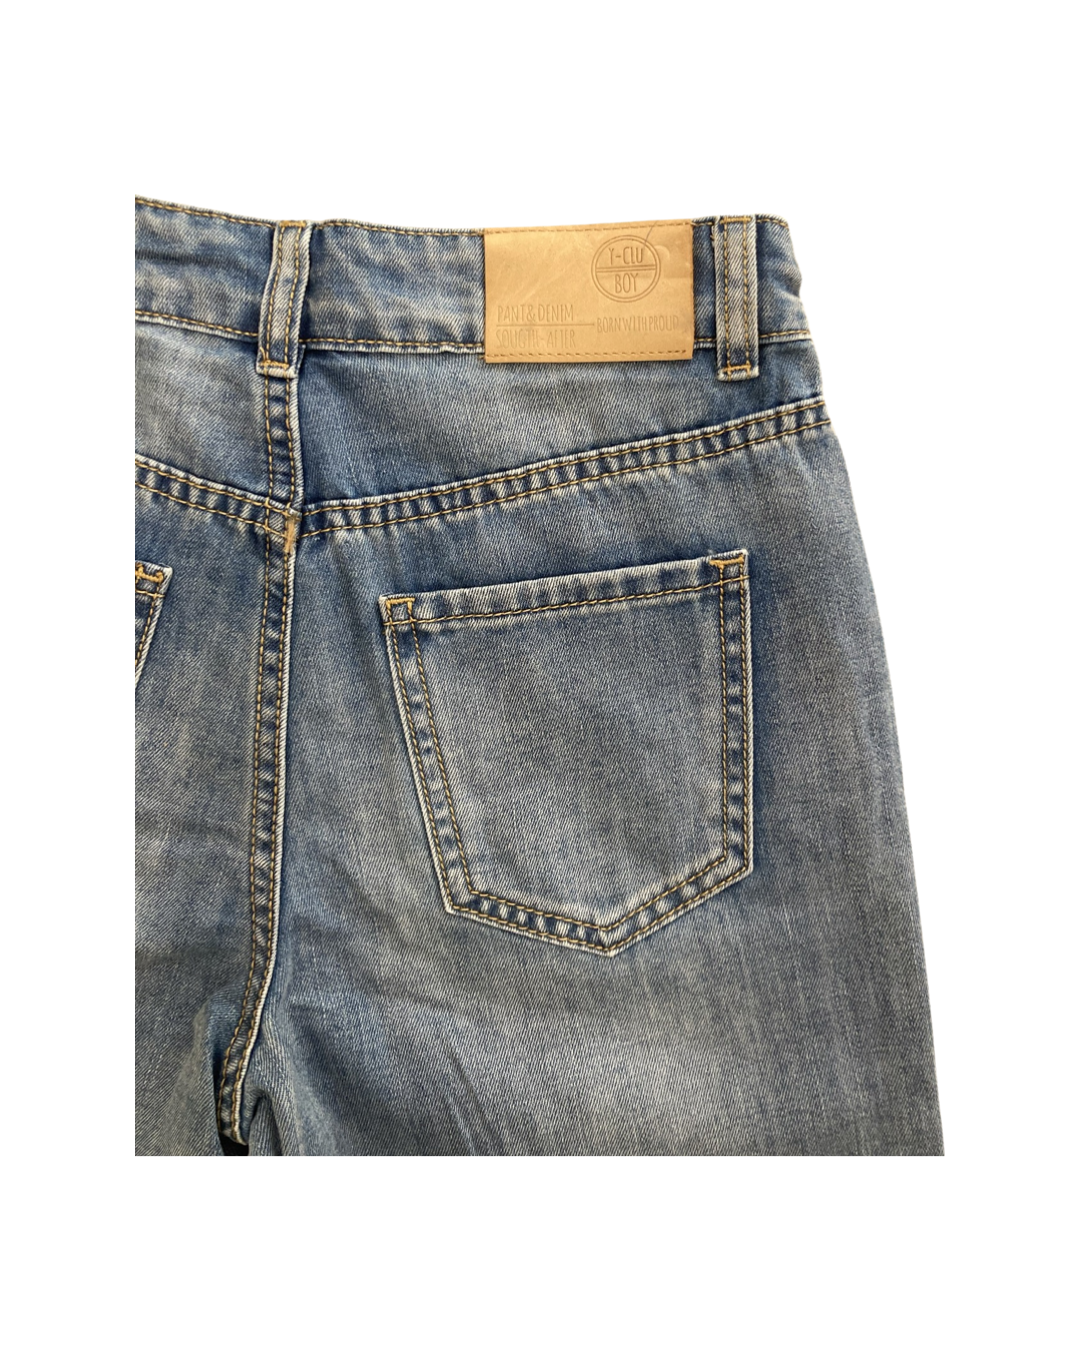 pantalone , Jeans corto regolabile in vita per Ragazzo da 8anni a 16anni Y-Clu BY9098 - BabyBimbo 0-16, abbigliamento bambini